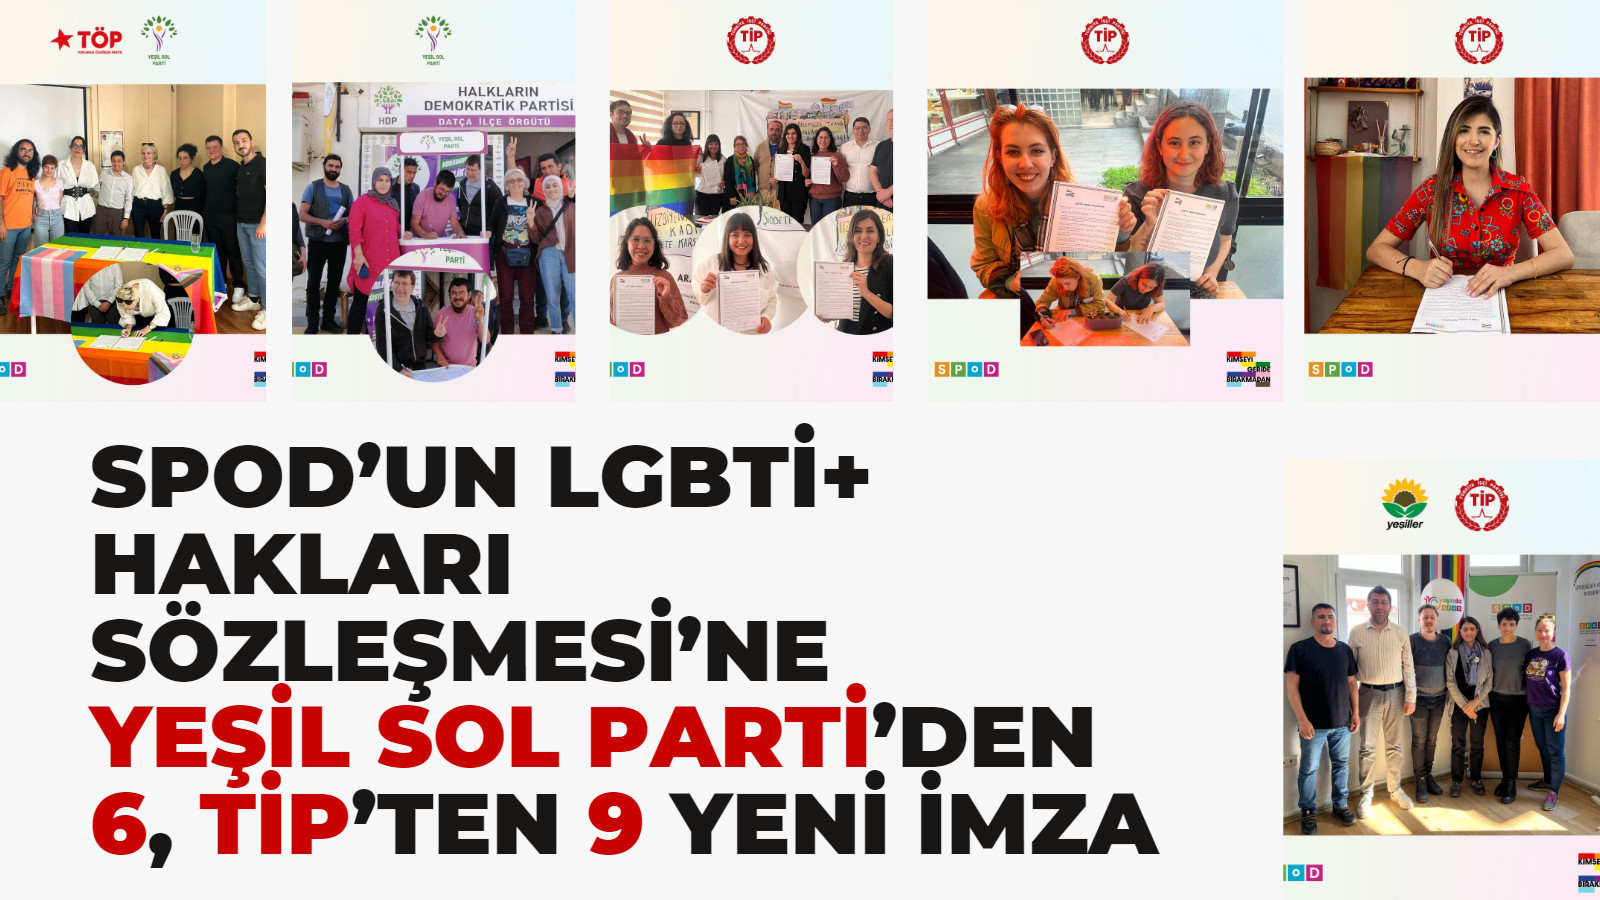 LGBTİ+ Hakları Sözleşmesi’ni imzalayan milletvekili adayı sayısı 29 oldu Kaos GL - LGBTİ+ Haber Portalı